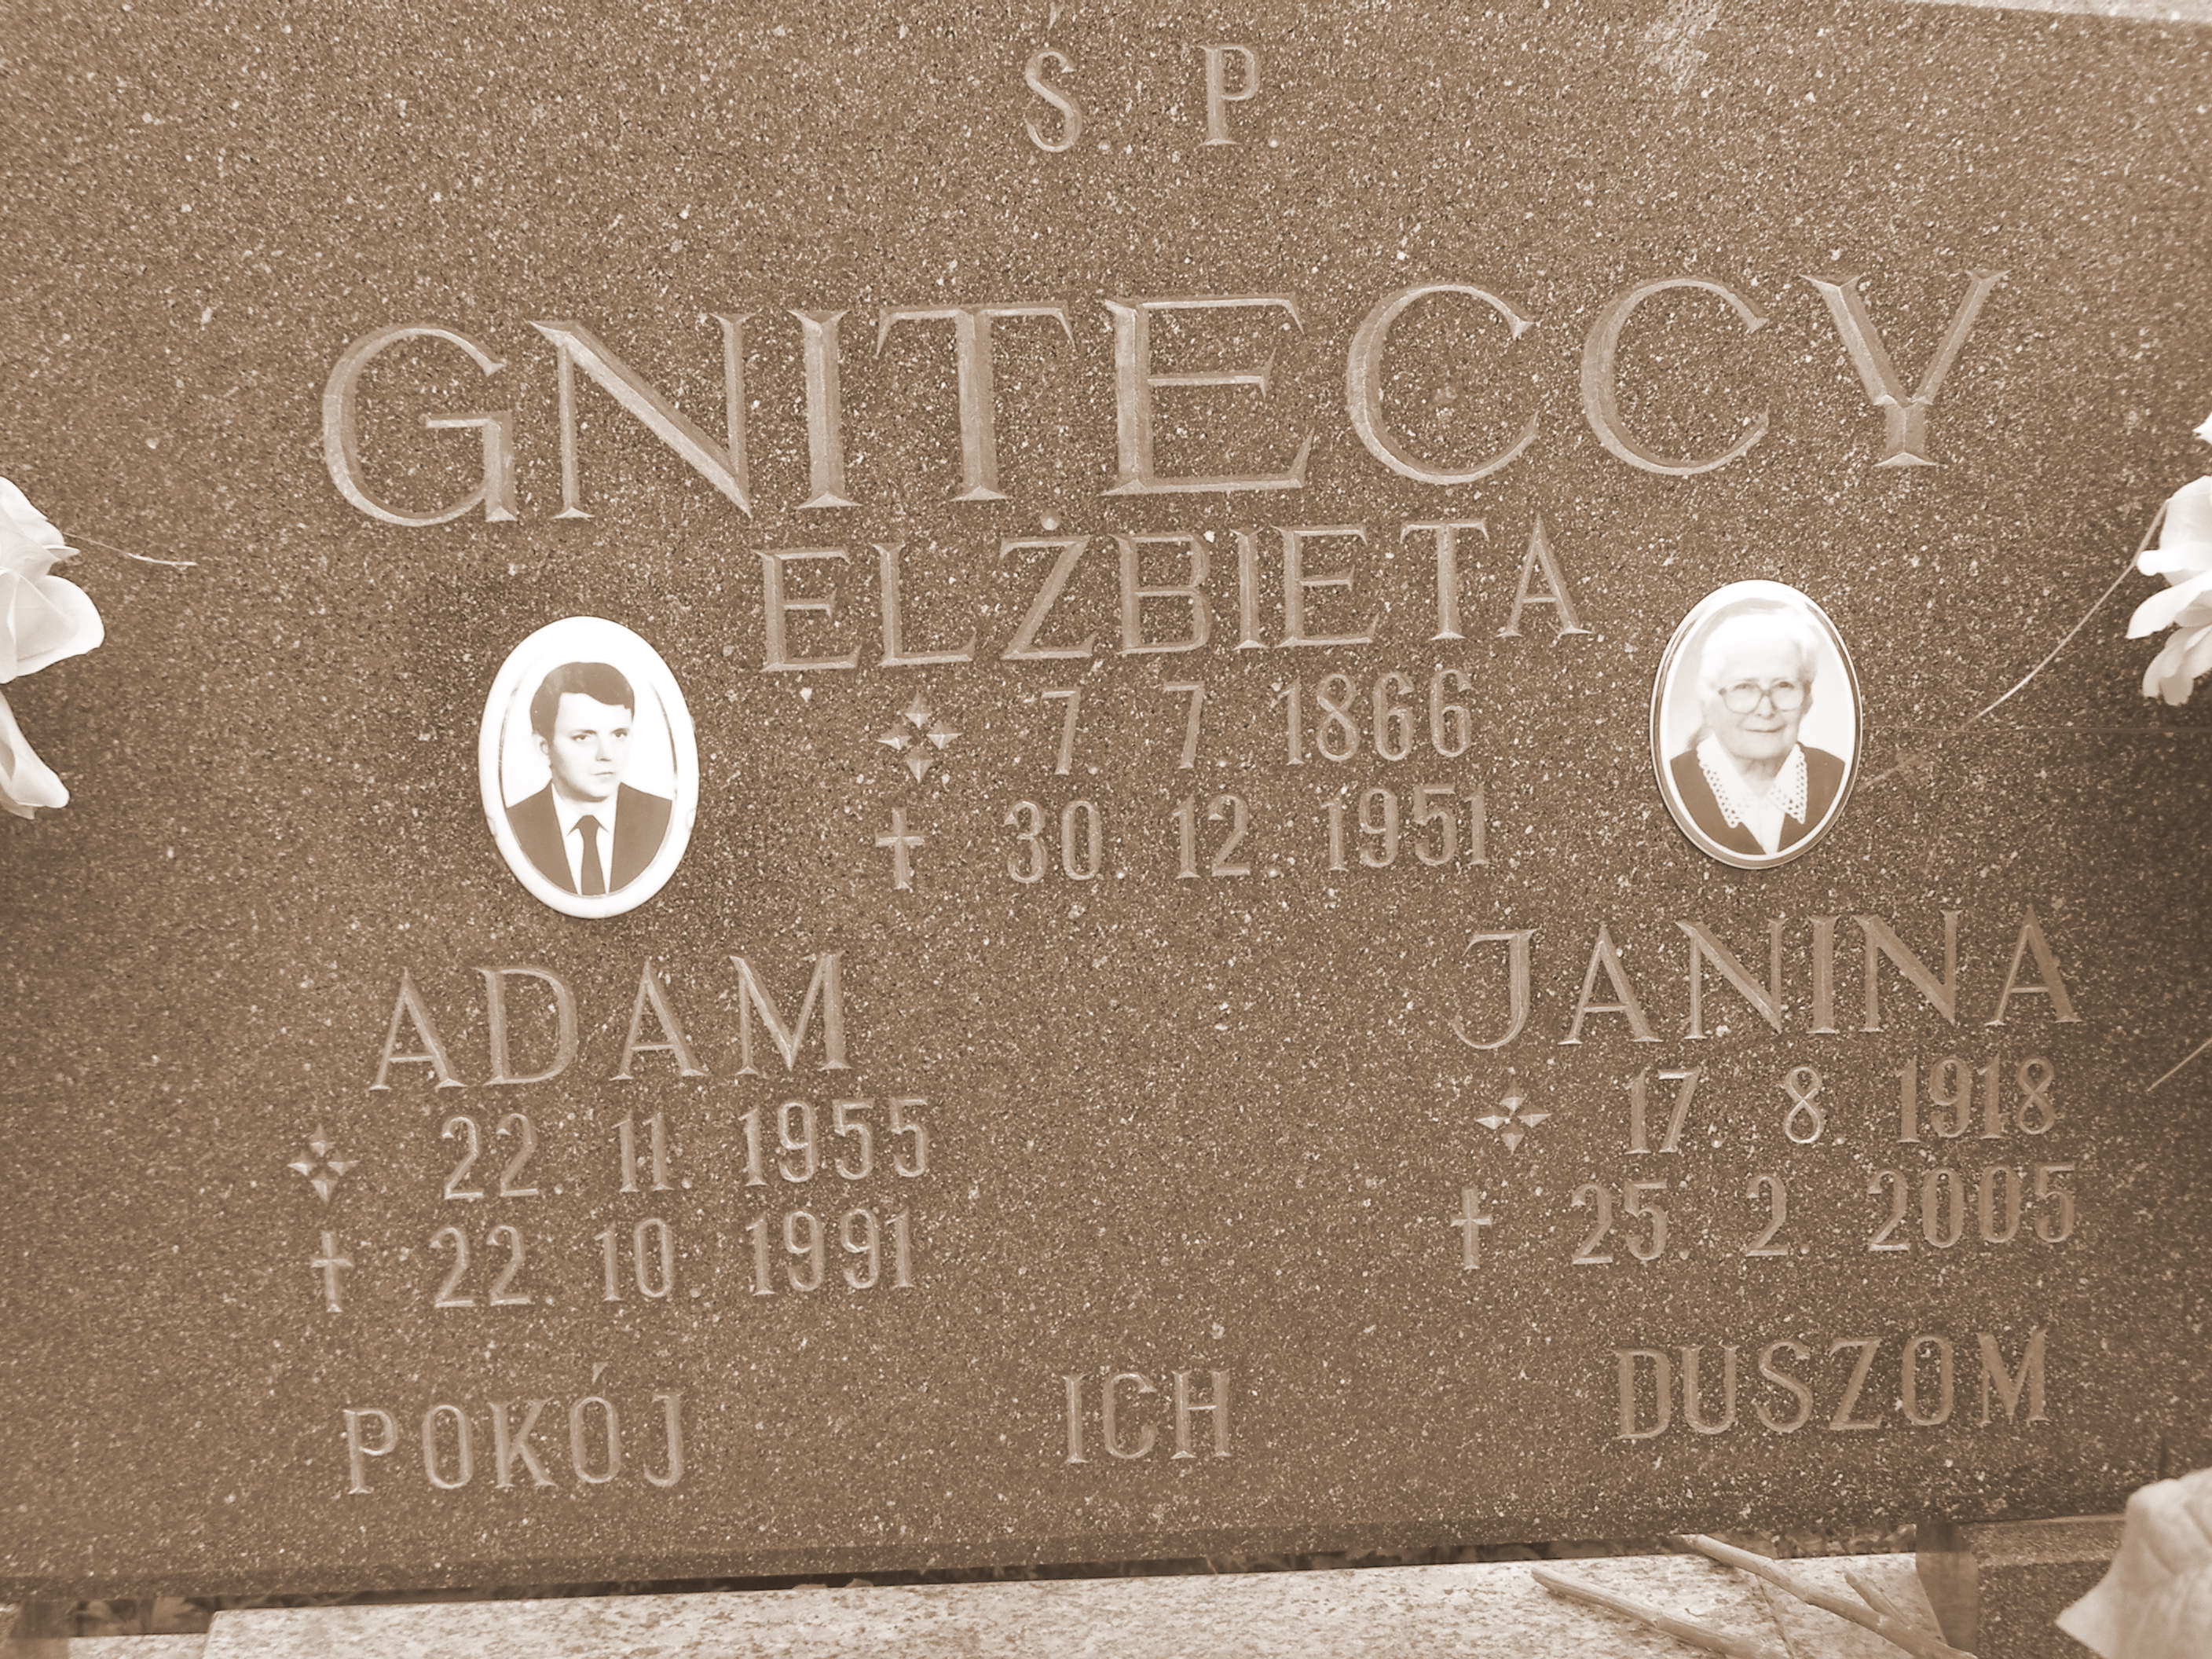 Grob Elzbiety Gniteckiej z domu Konsewicz.JPG